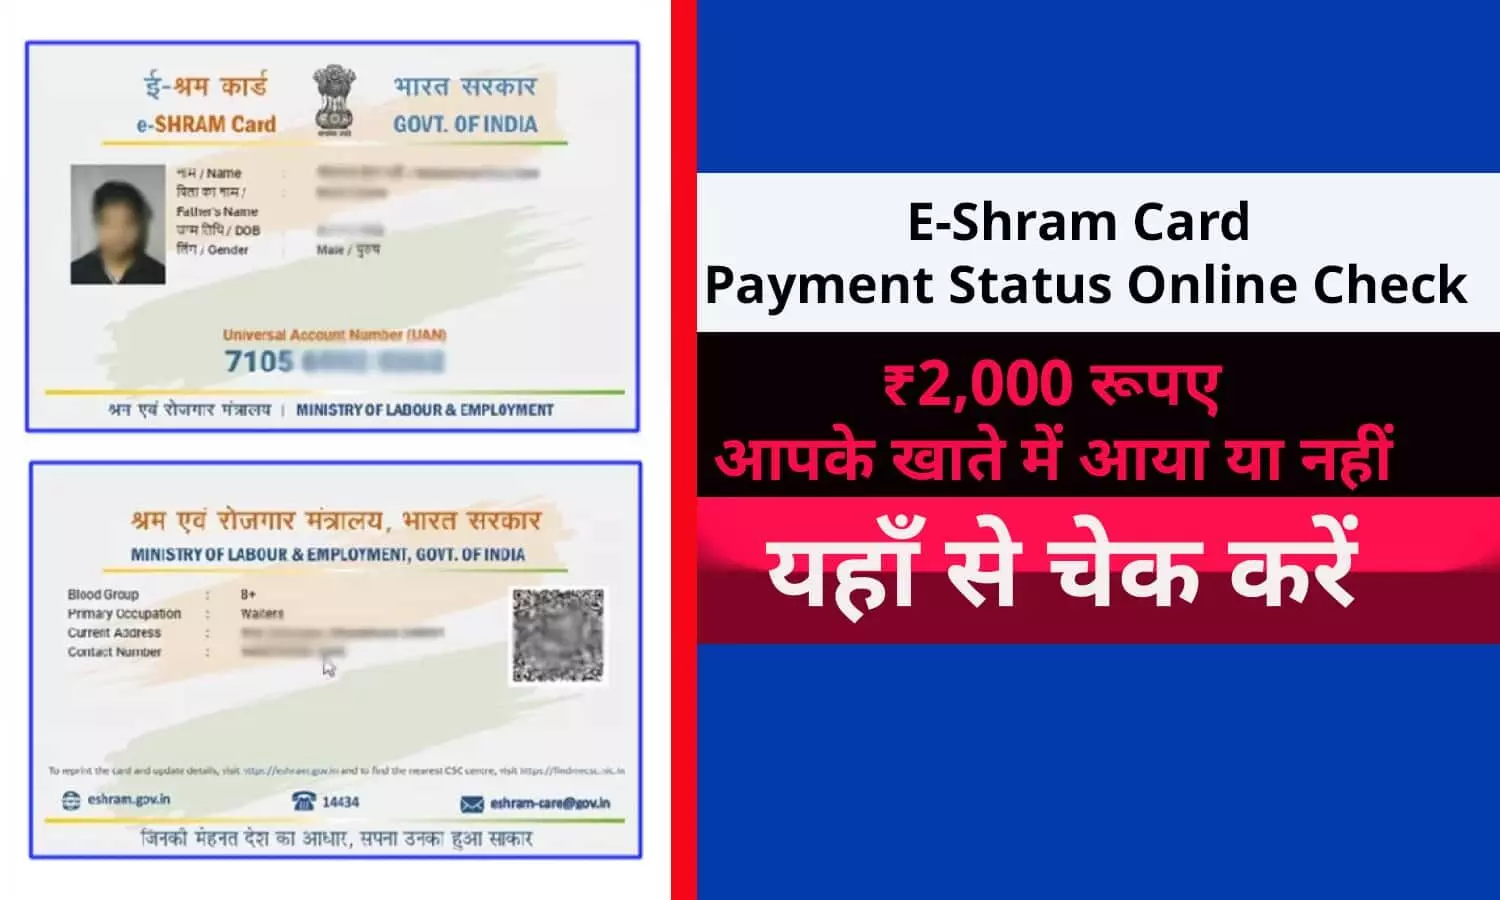 E-Shram Card Payment Status Online Check In Hindi 2022: ख़ुशख़बरी! ₹2,000 आपके खाते में आया या नहीं?  फटाफट चेक करे